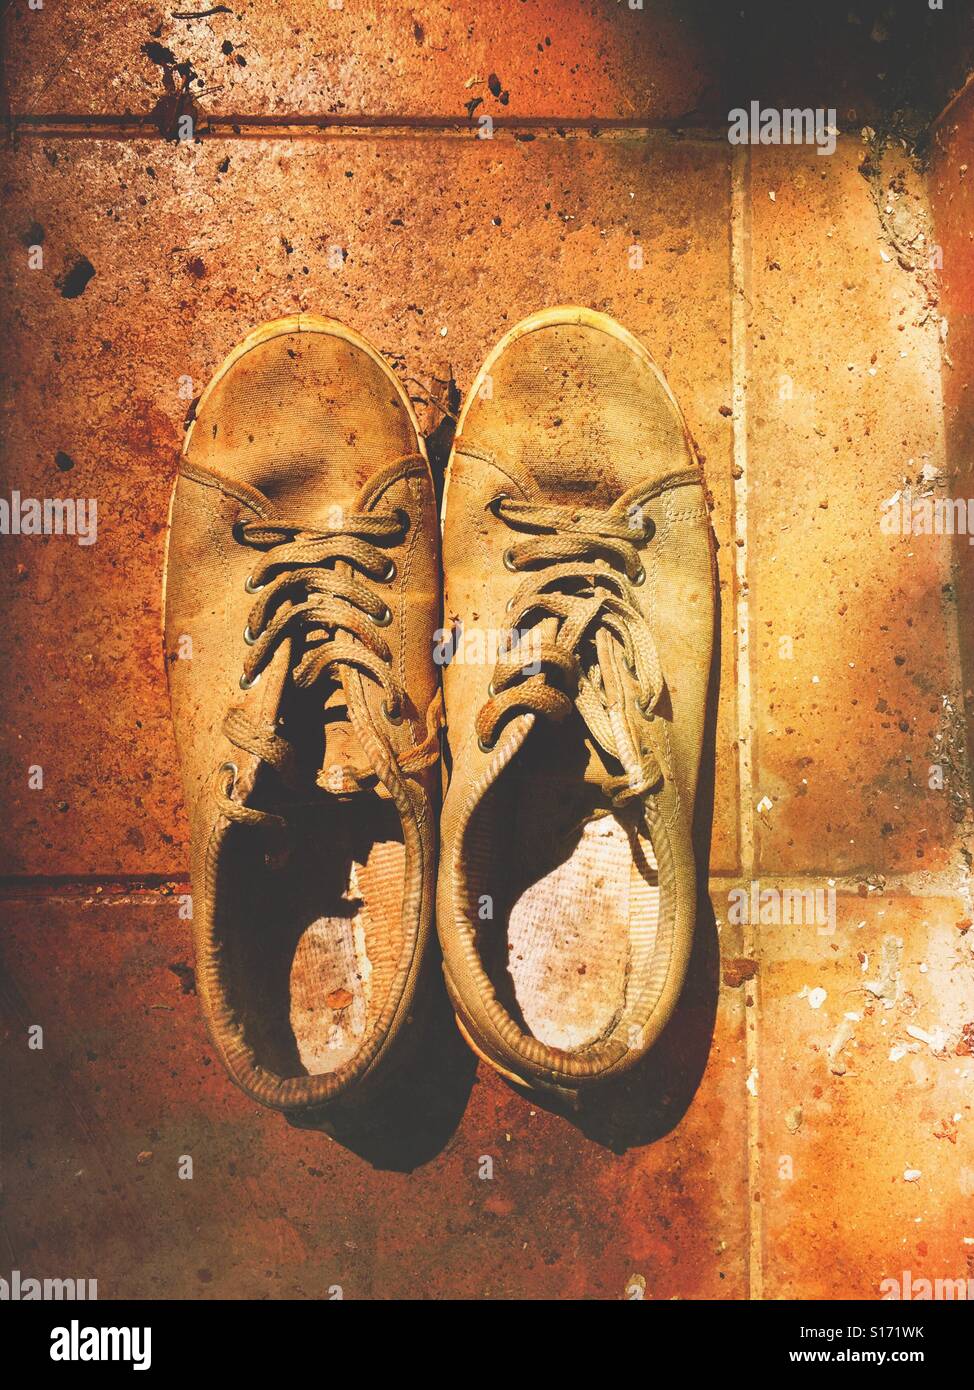 Old dirty man's shoes sur le sol à l'extérieur Banque D'Images